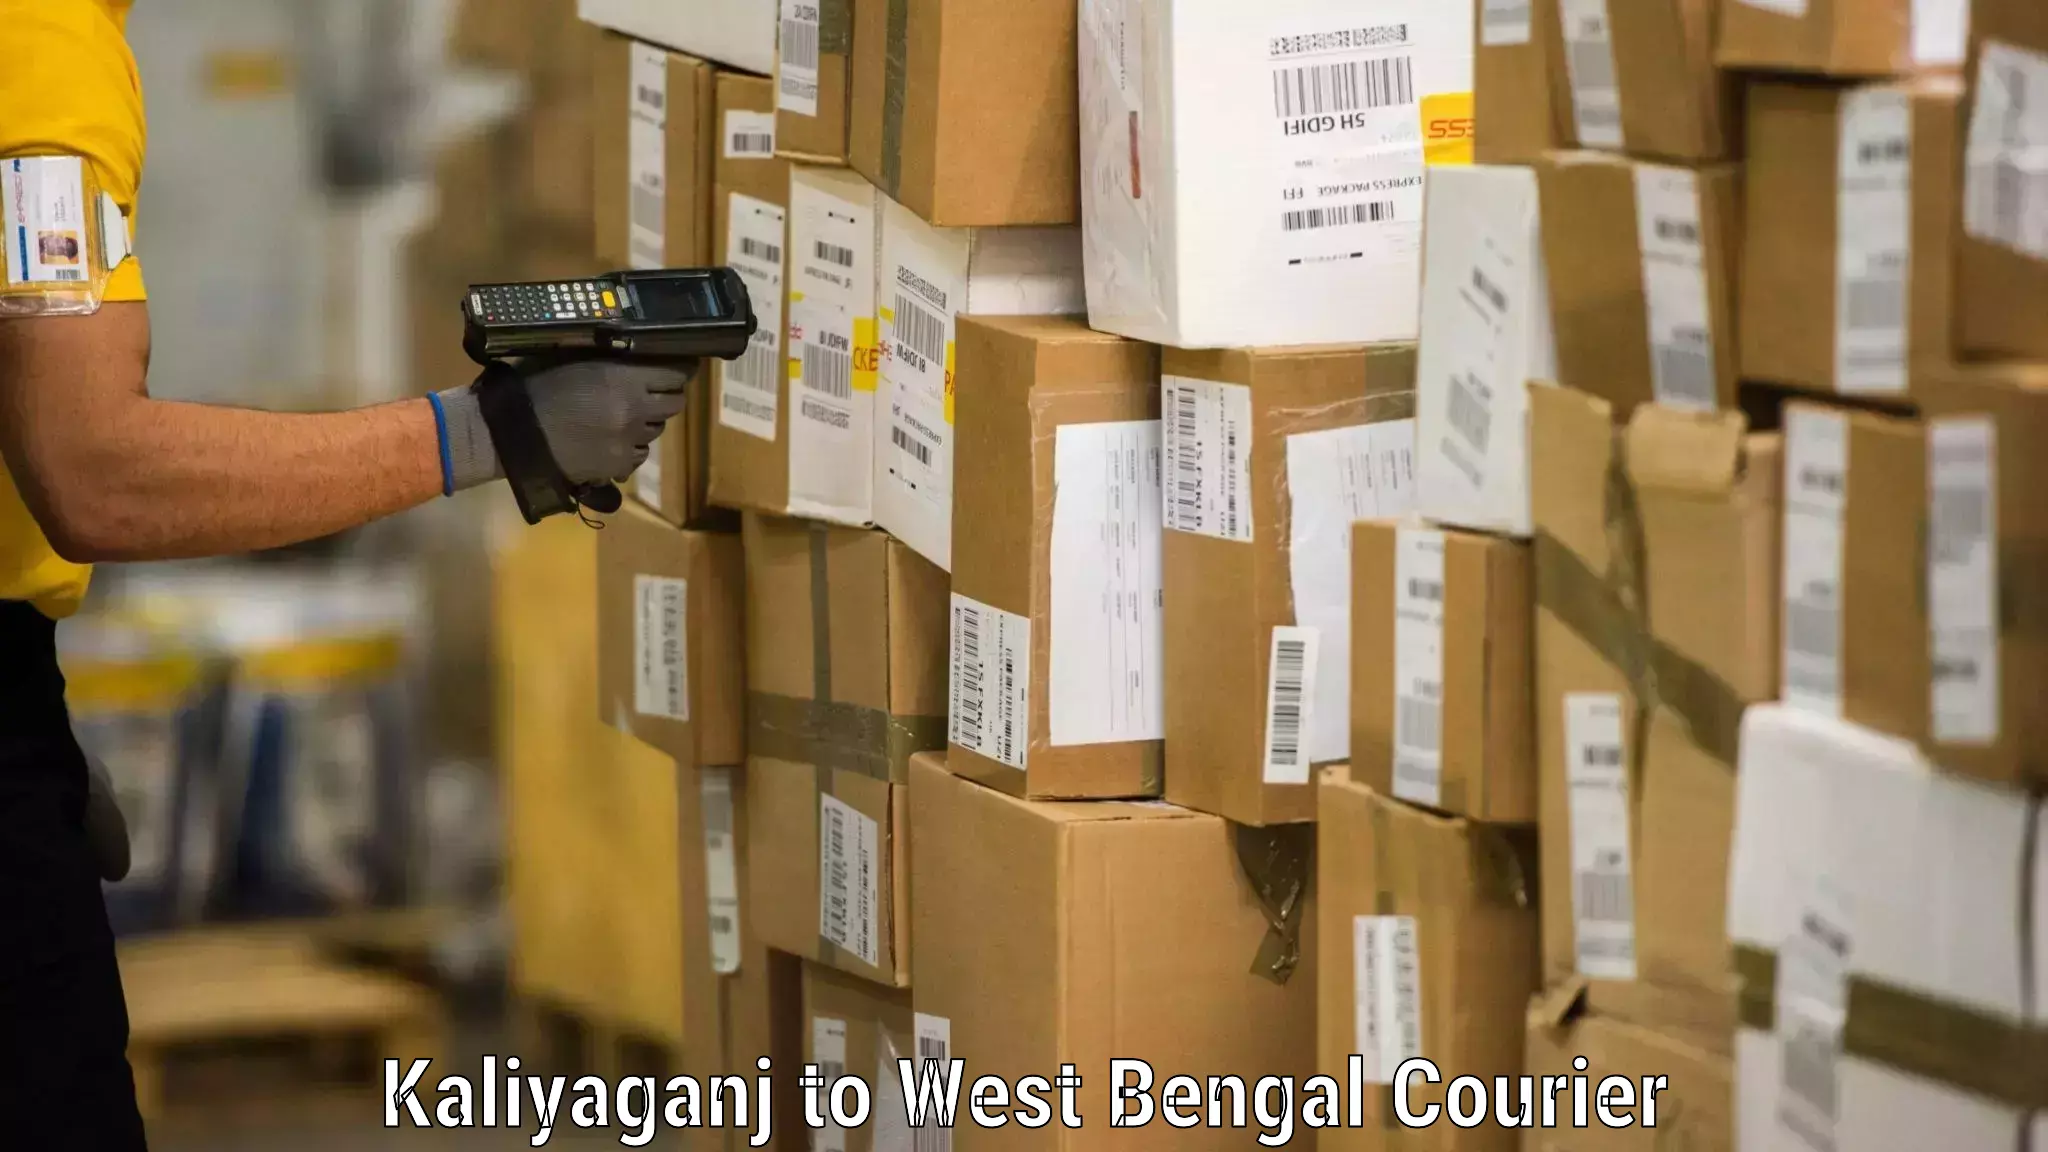 Furniture transport service Kaliyaganj to West Bengal